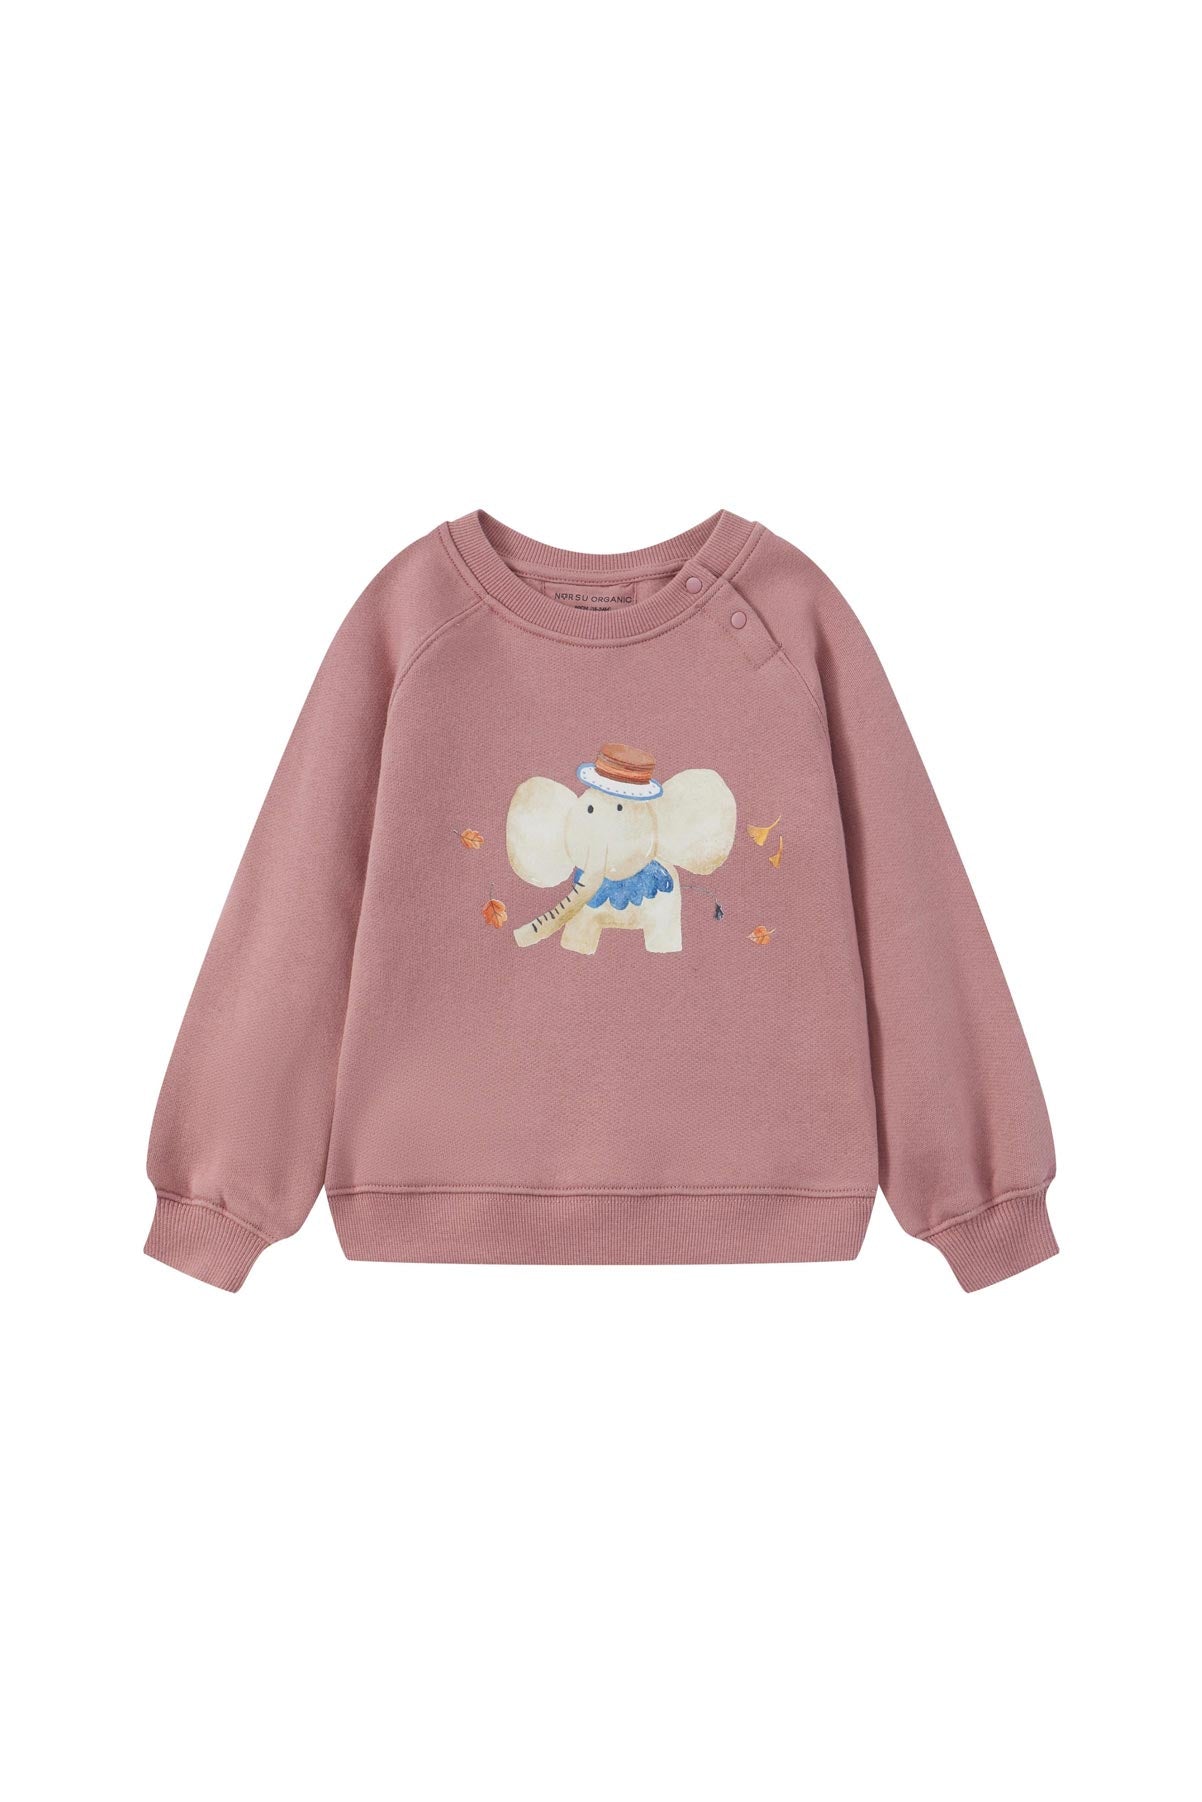 front of Toddler Organic Fleece Sweatshirt-Ash Rose